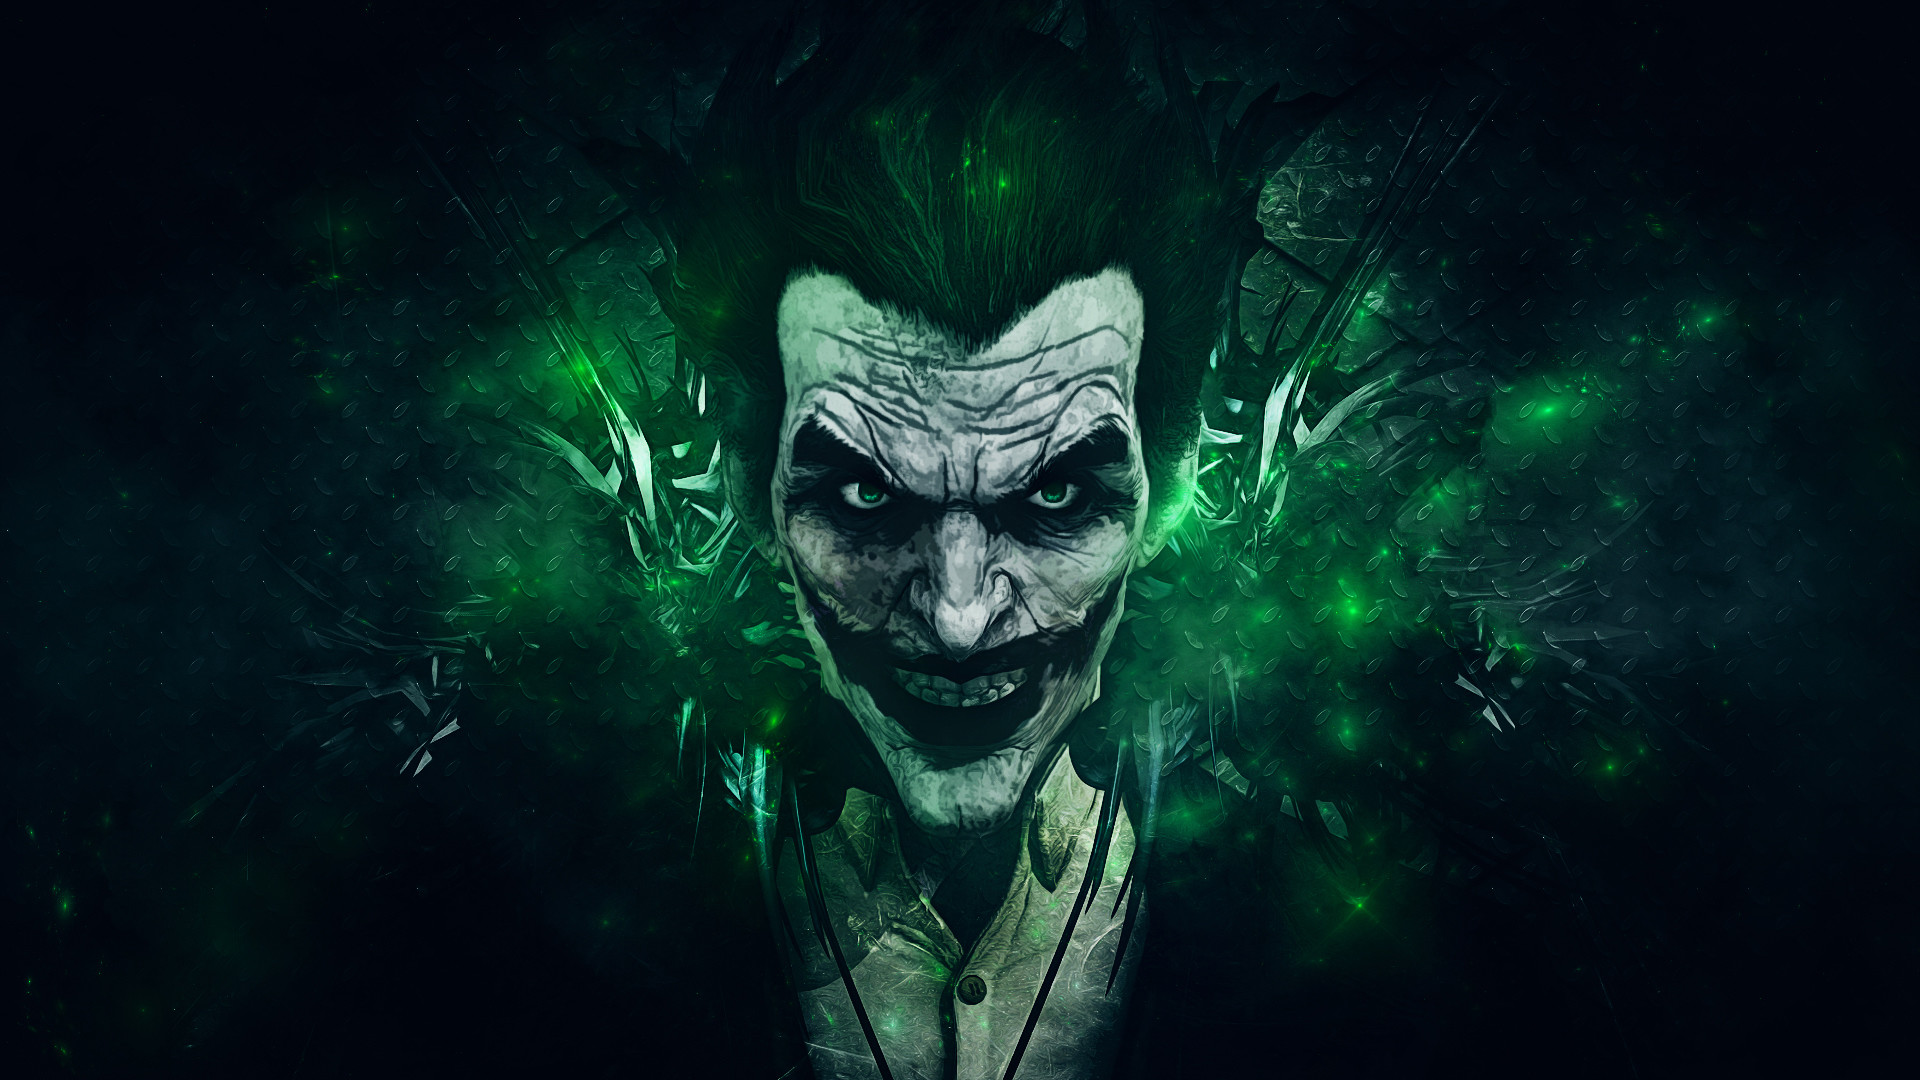 batman hd wallpapers for pc,green,supervillain,fictional character,joker,darkness